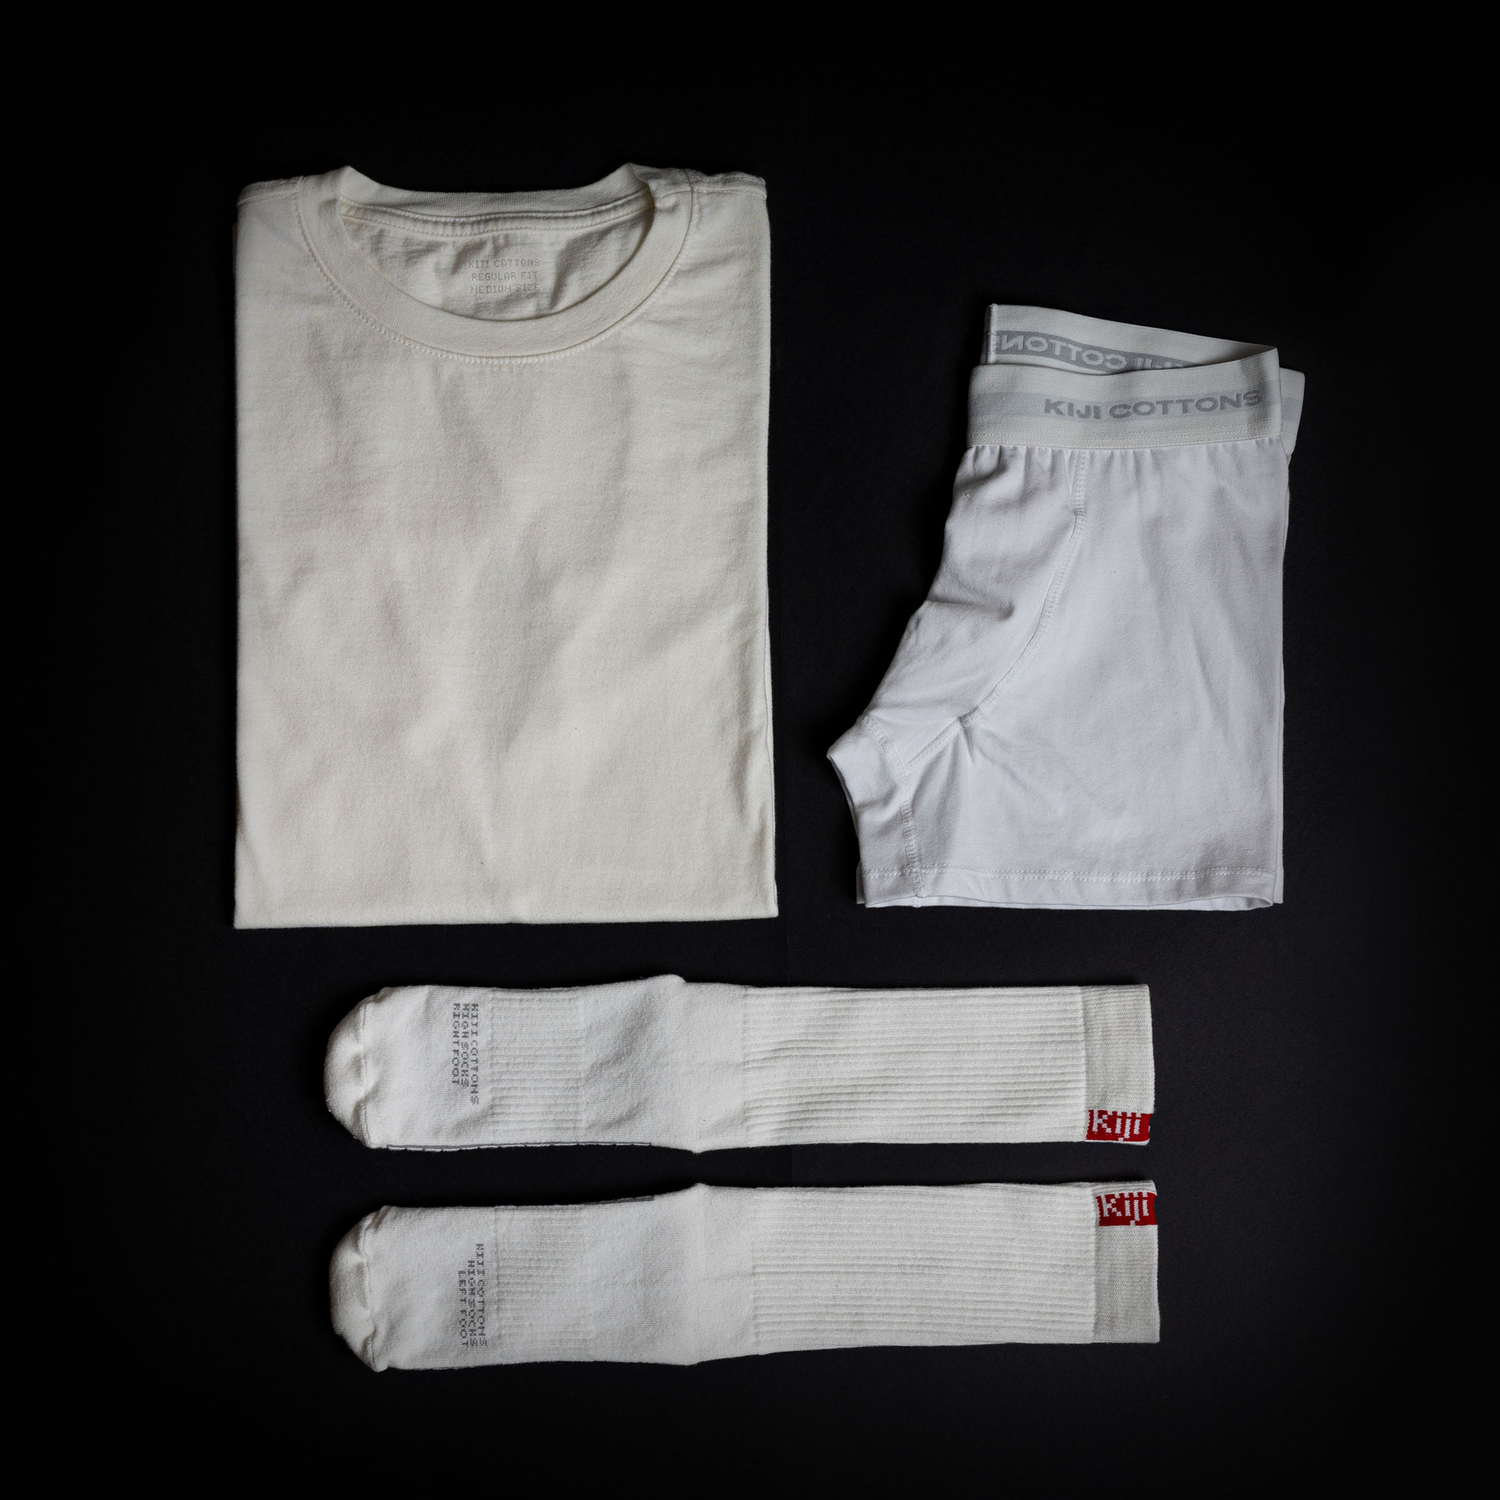 Kiji - Camisetas, cuecas e meias em algodão de alto padrão